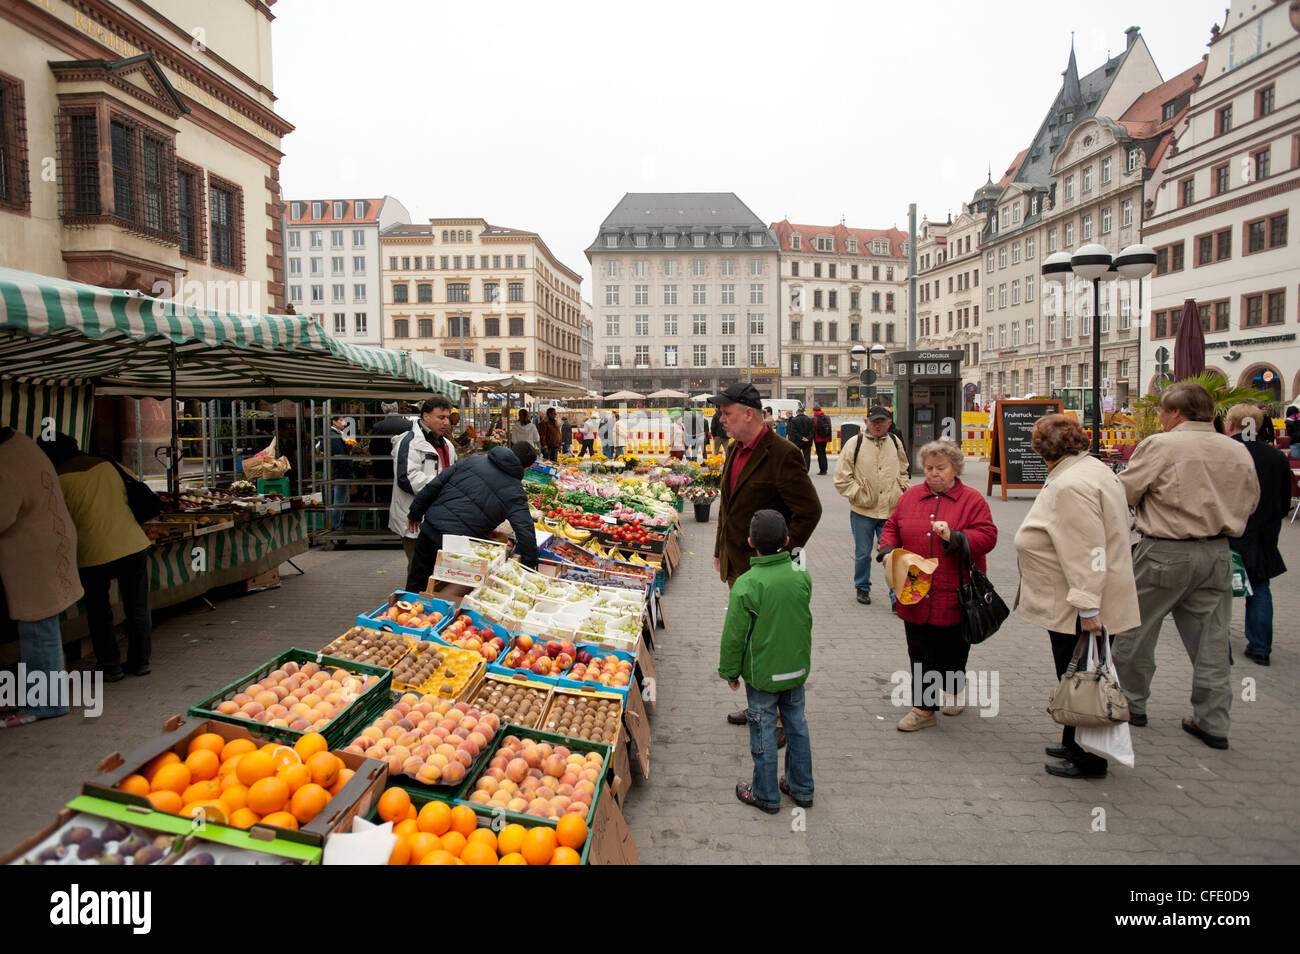 Market at the Rathaus, Leipzig, Saxony, Germany, Europe Stock Photo